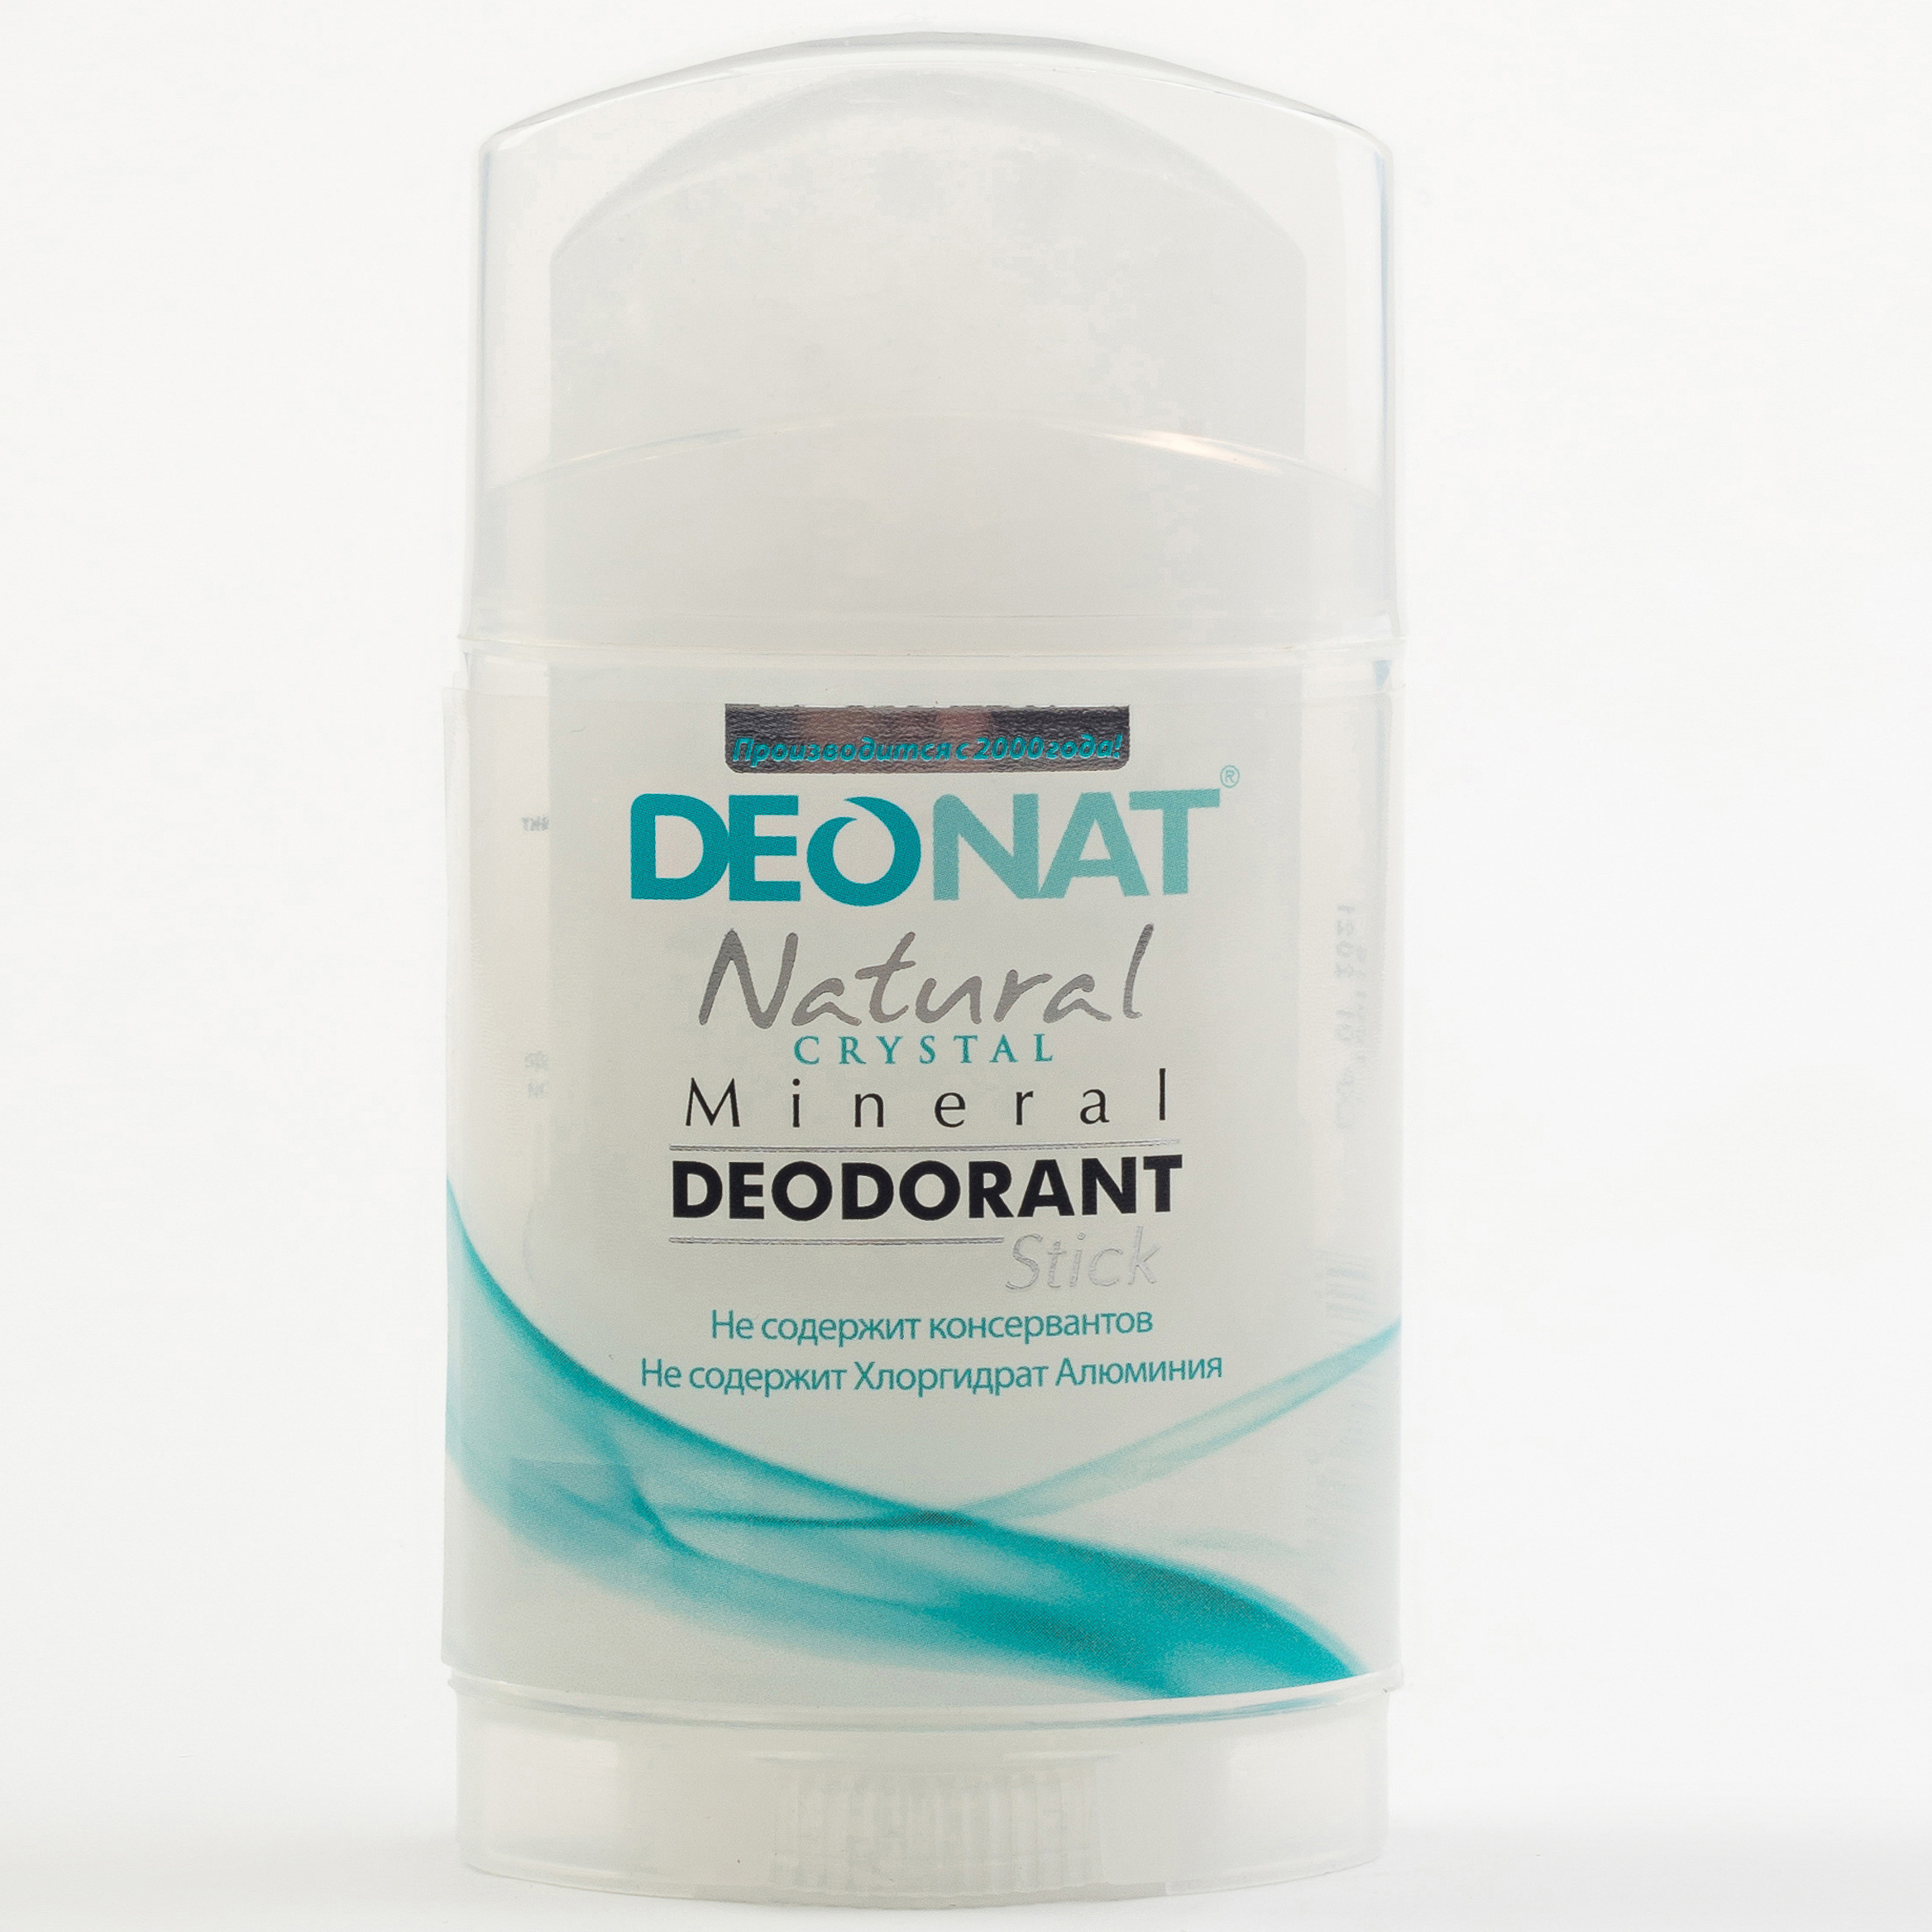 Дезодорант natural. Дезодорант-Кристалл DEONAT. ДЕОНАТ стик минеральный дезодорант. Дезодорант Кристалл ДЕОНАТ. ДЕОНАТ / натуральный минеральный дезодорант Кристалл.